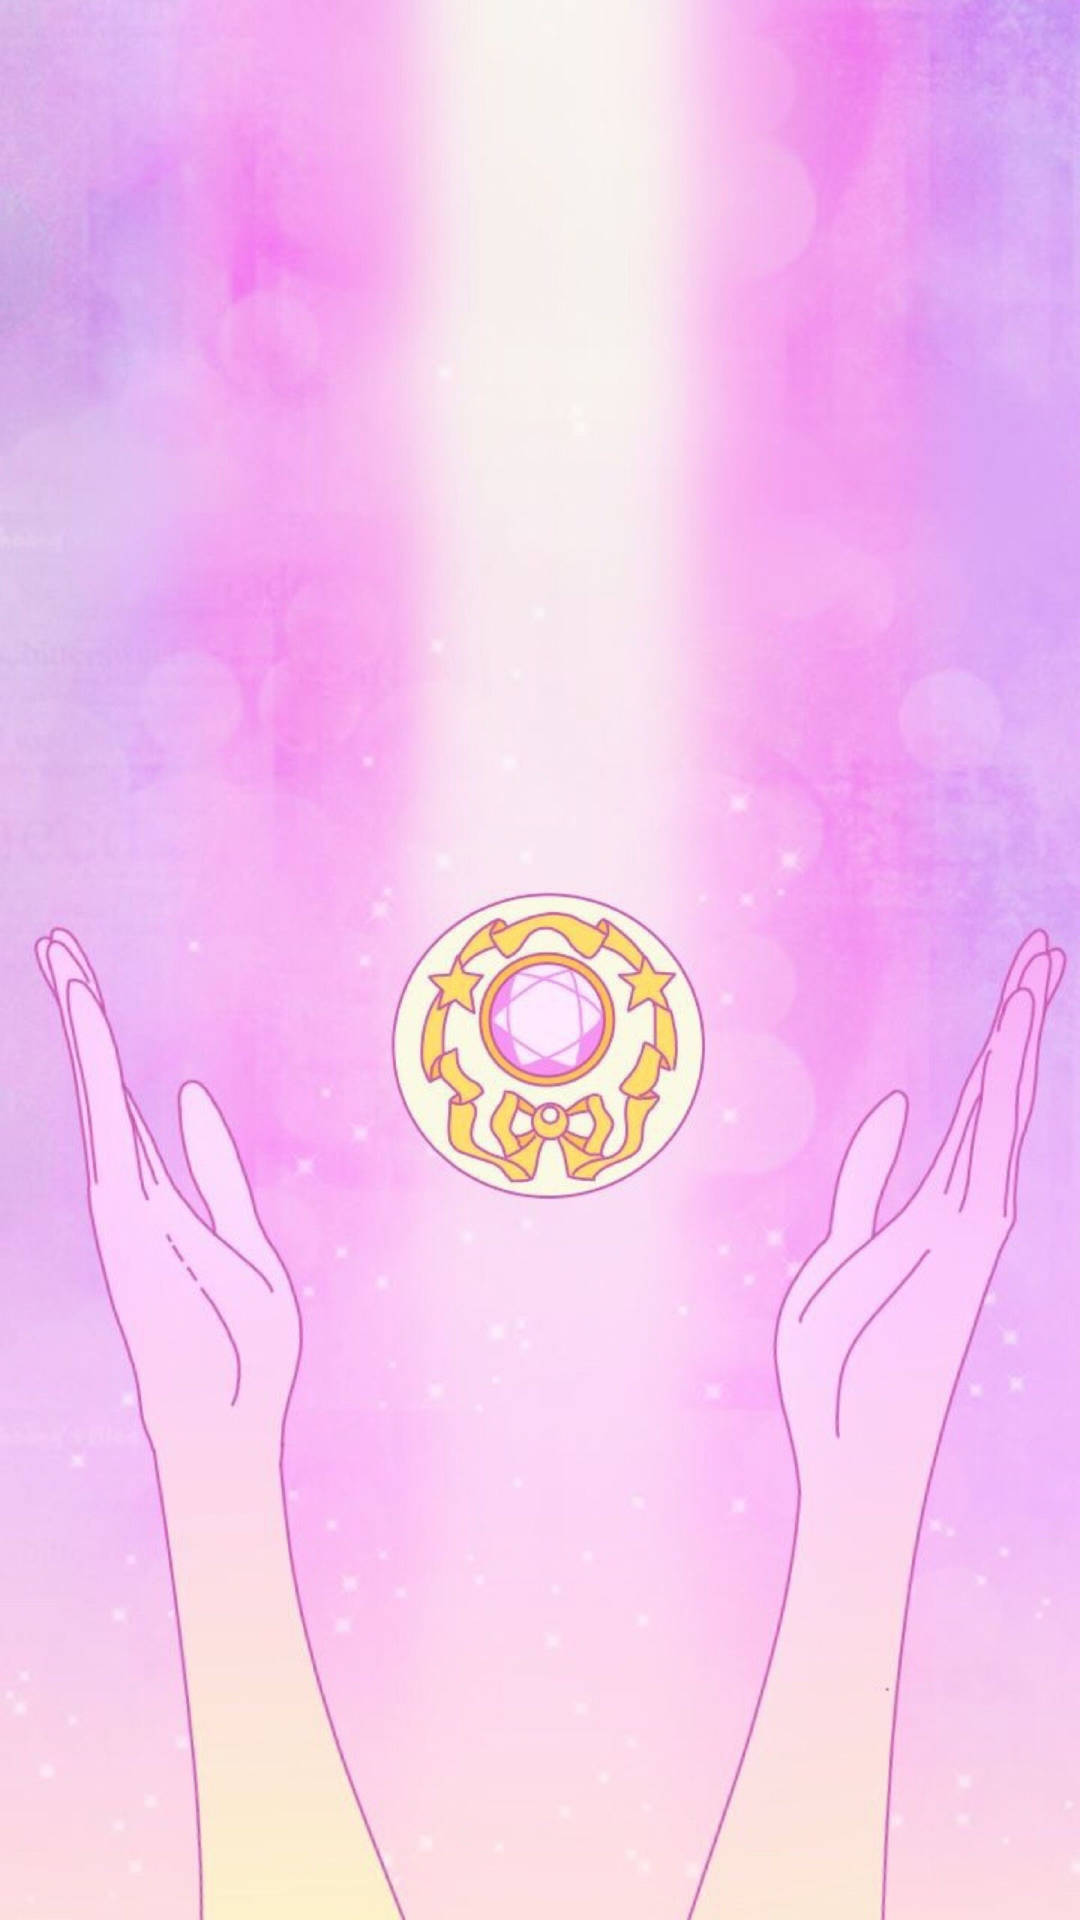 Wallpaperhänder Som Sträcker Sig Efter En Sailor Moon-juvel-iphone-bakgrundsbild. Wallpaper